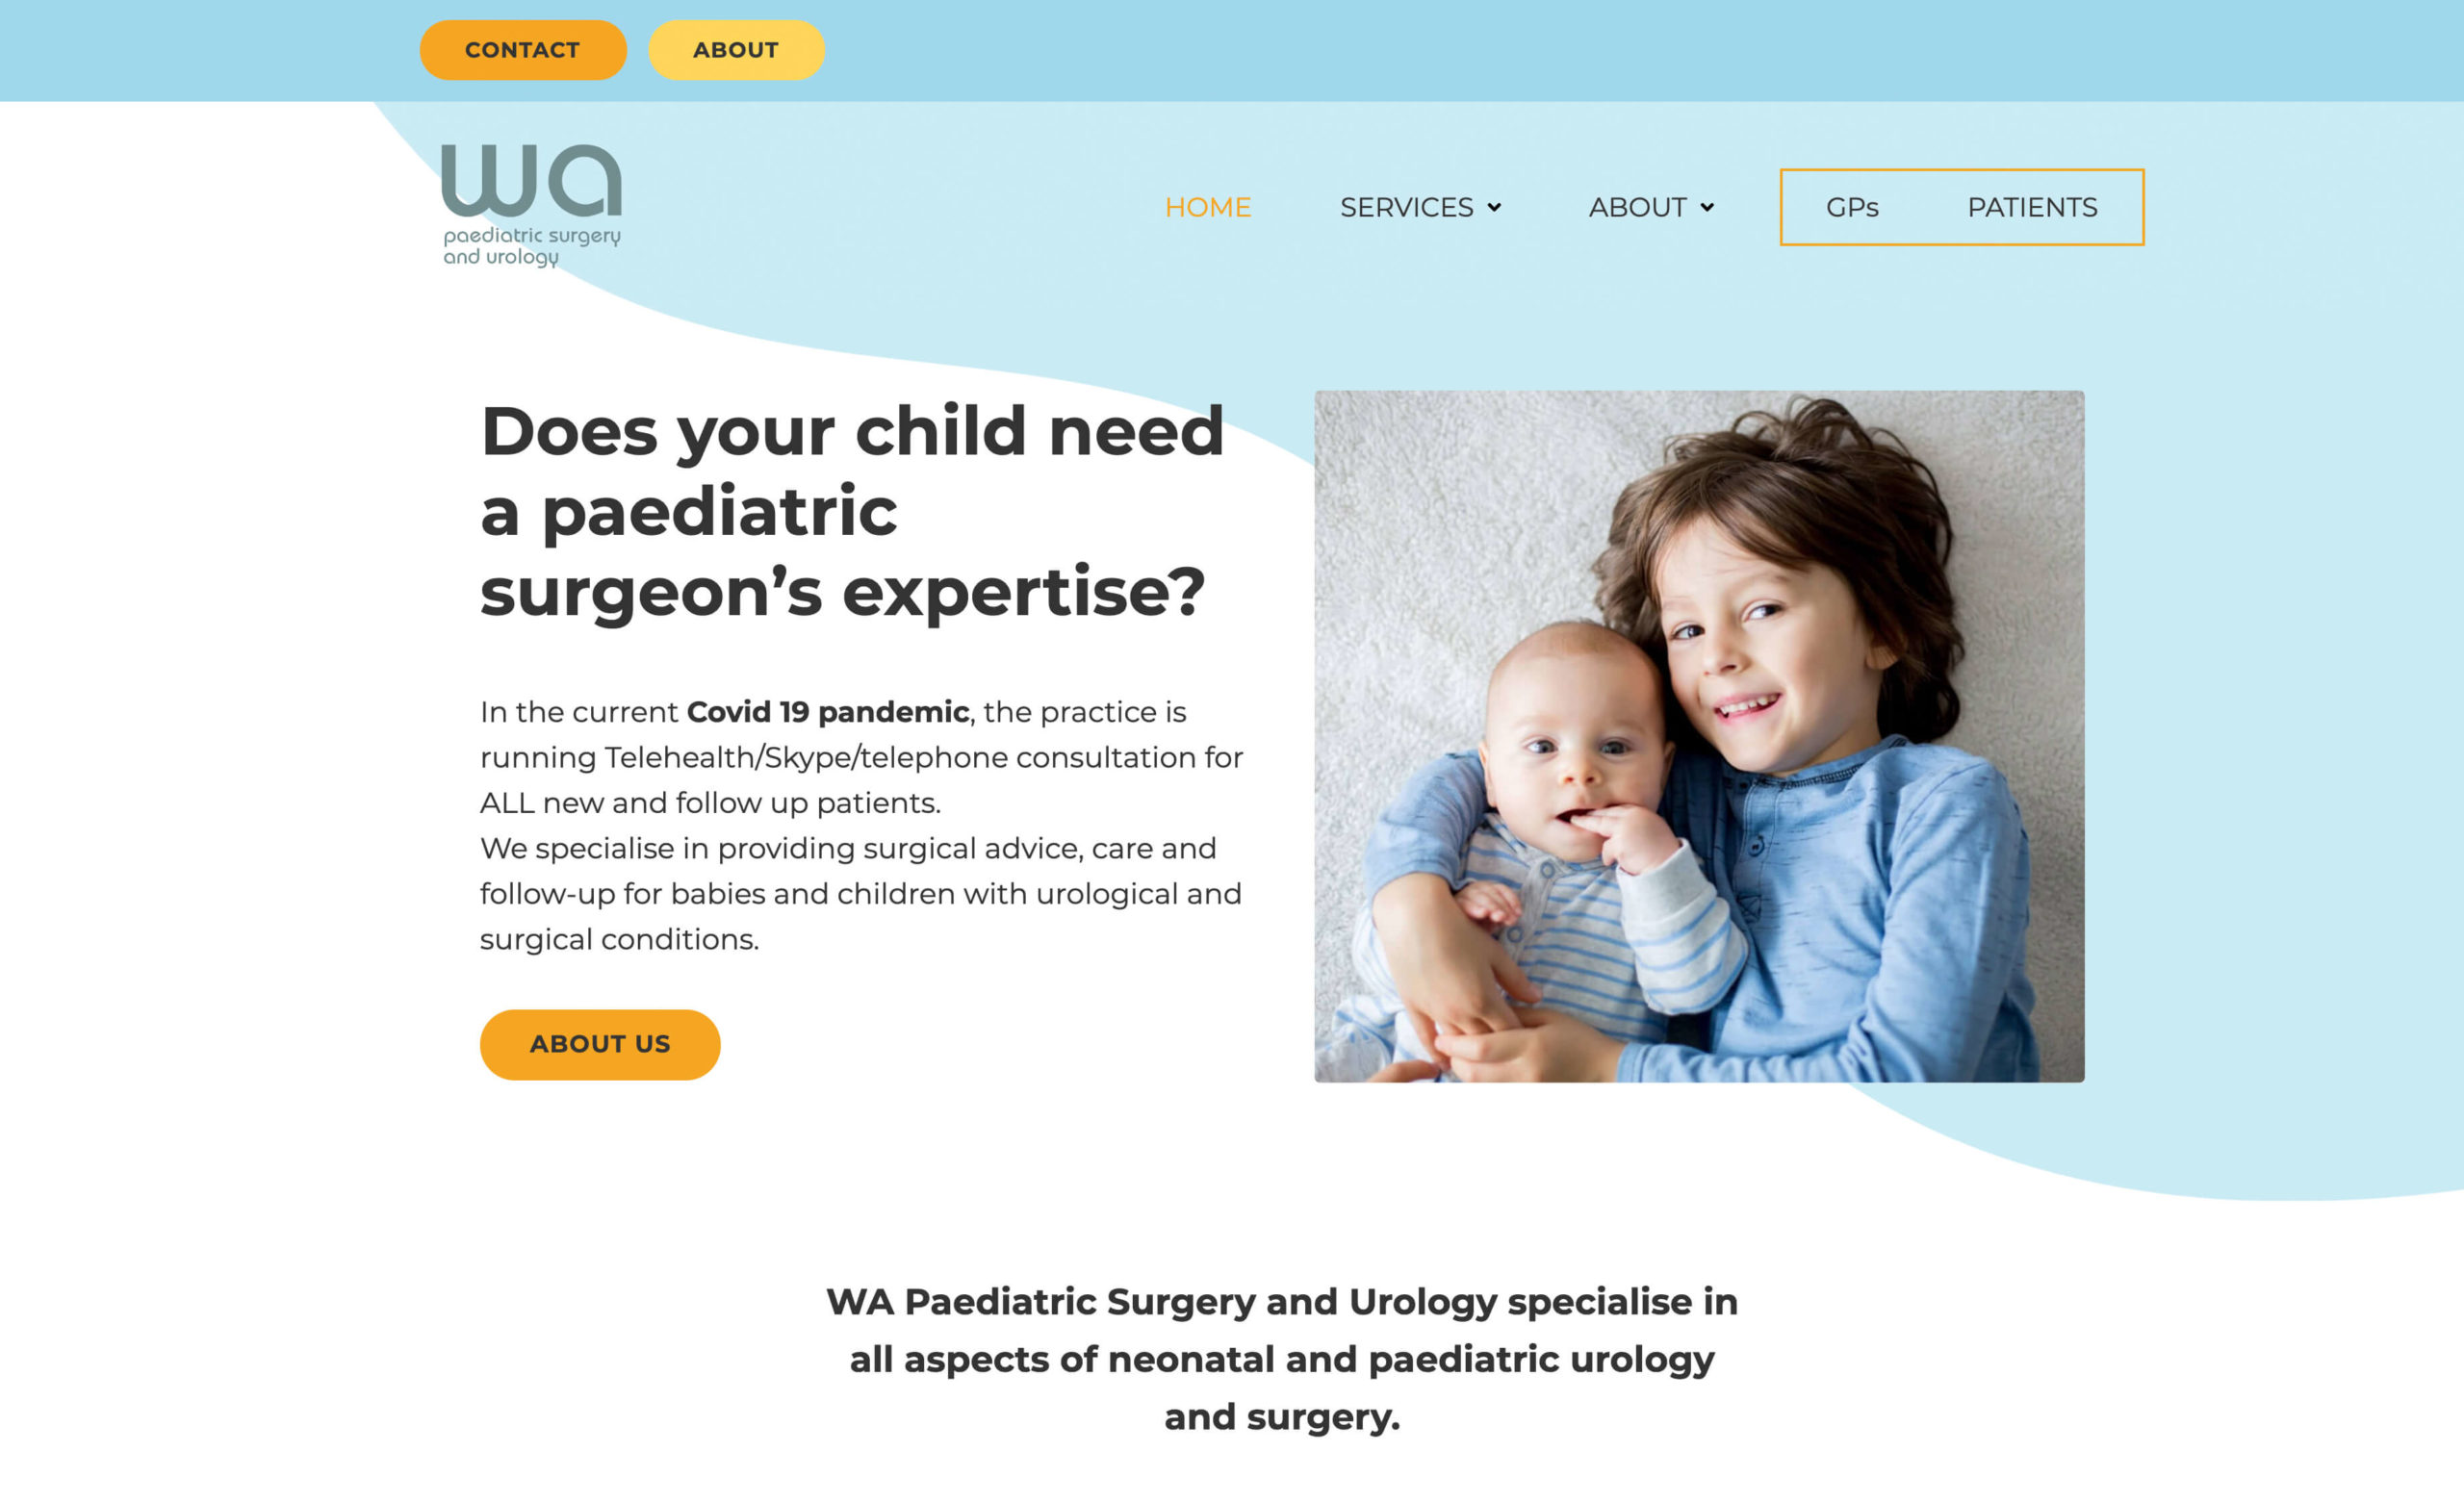 WA Paediatric Surgery & Urology